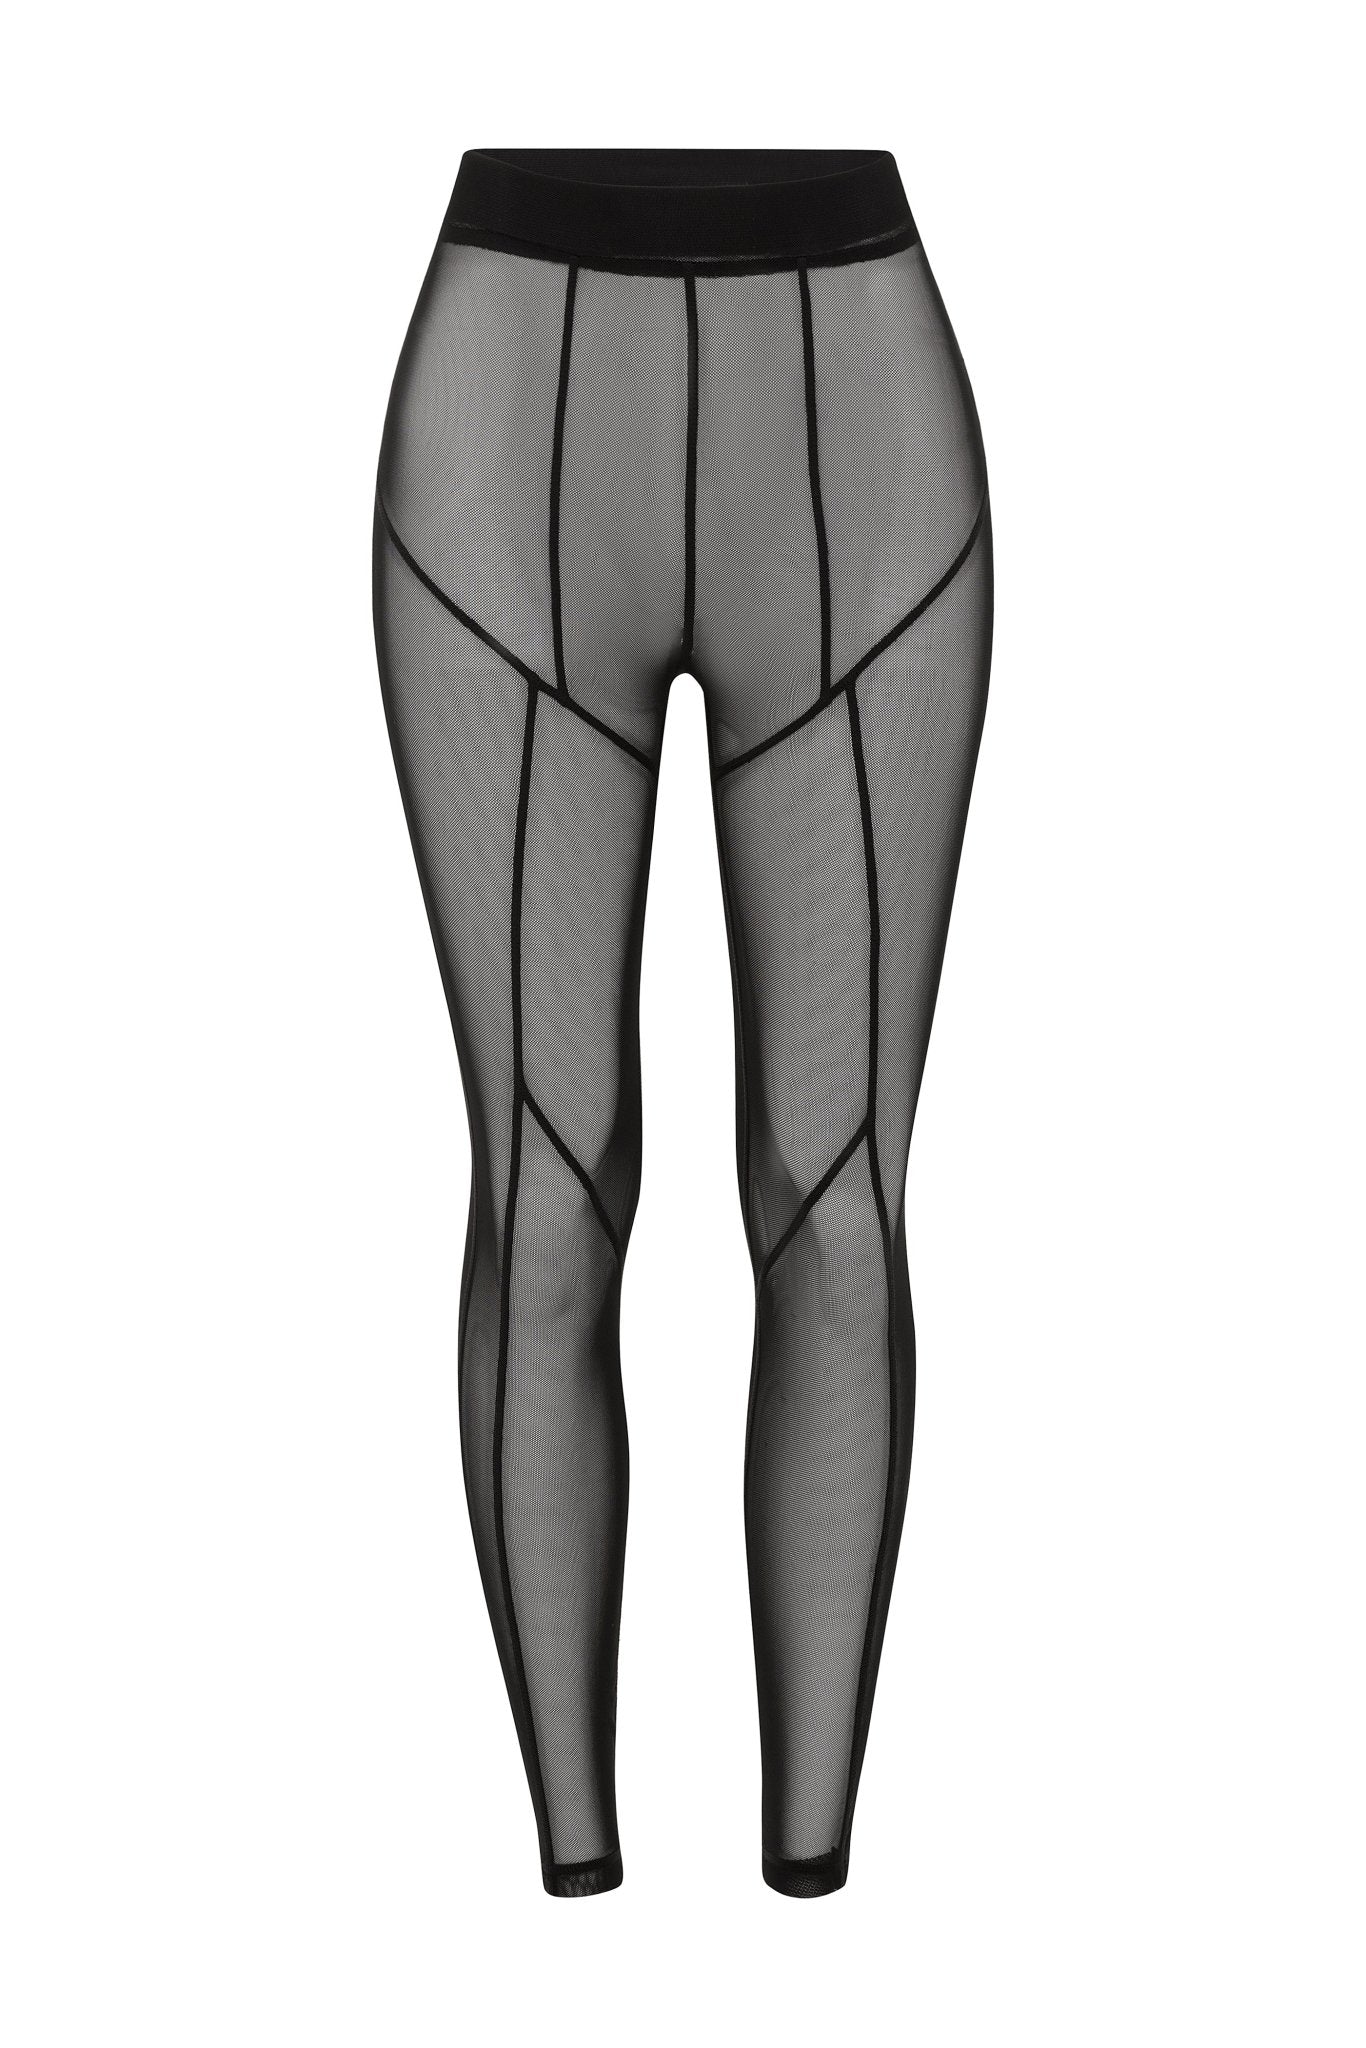 MESH LEGGINGS Leggings With Transparent Mesh Fabric Gray -  Canada